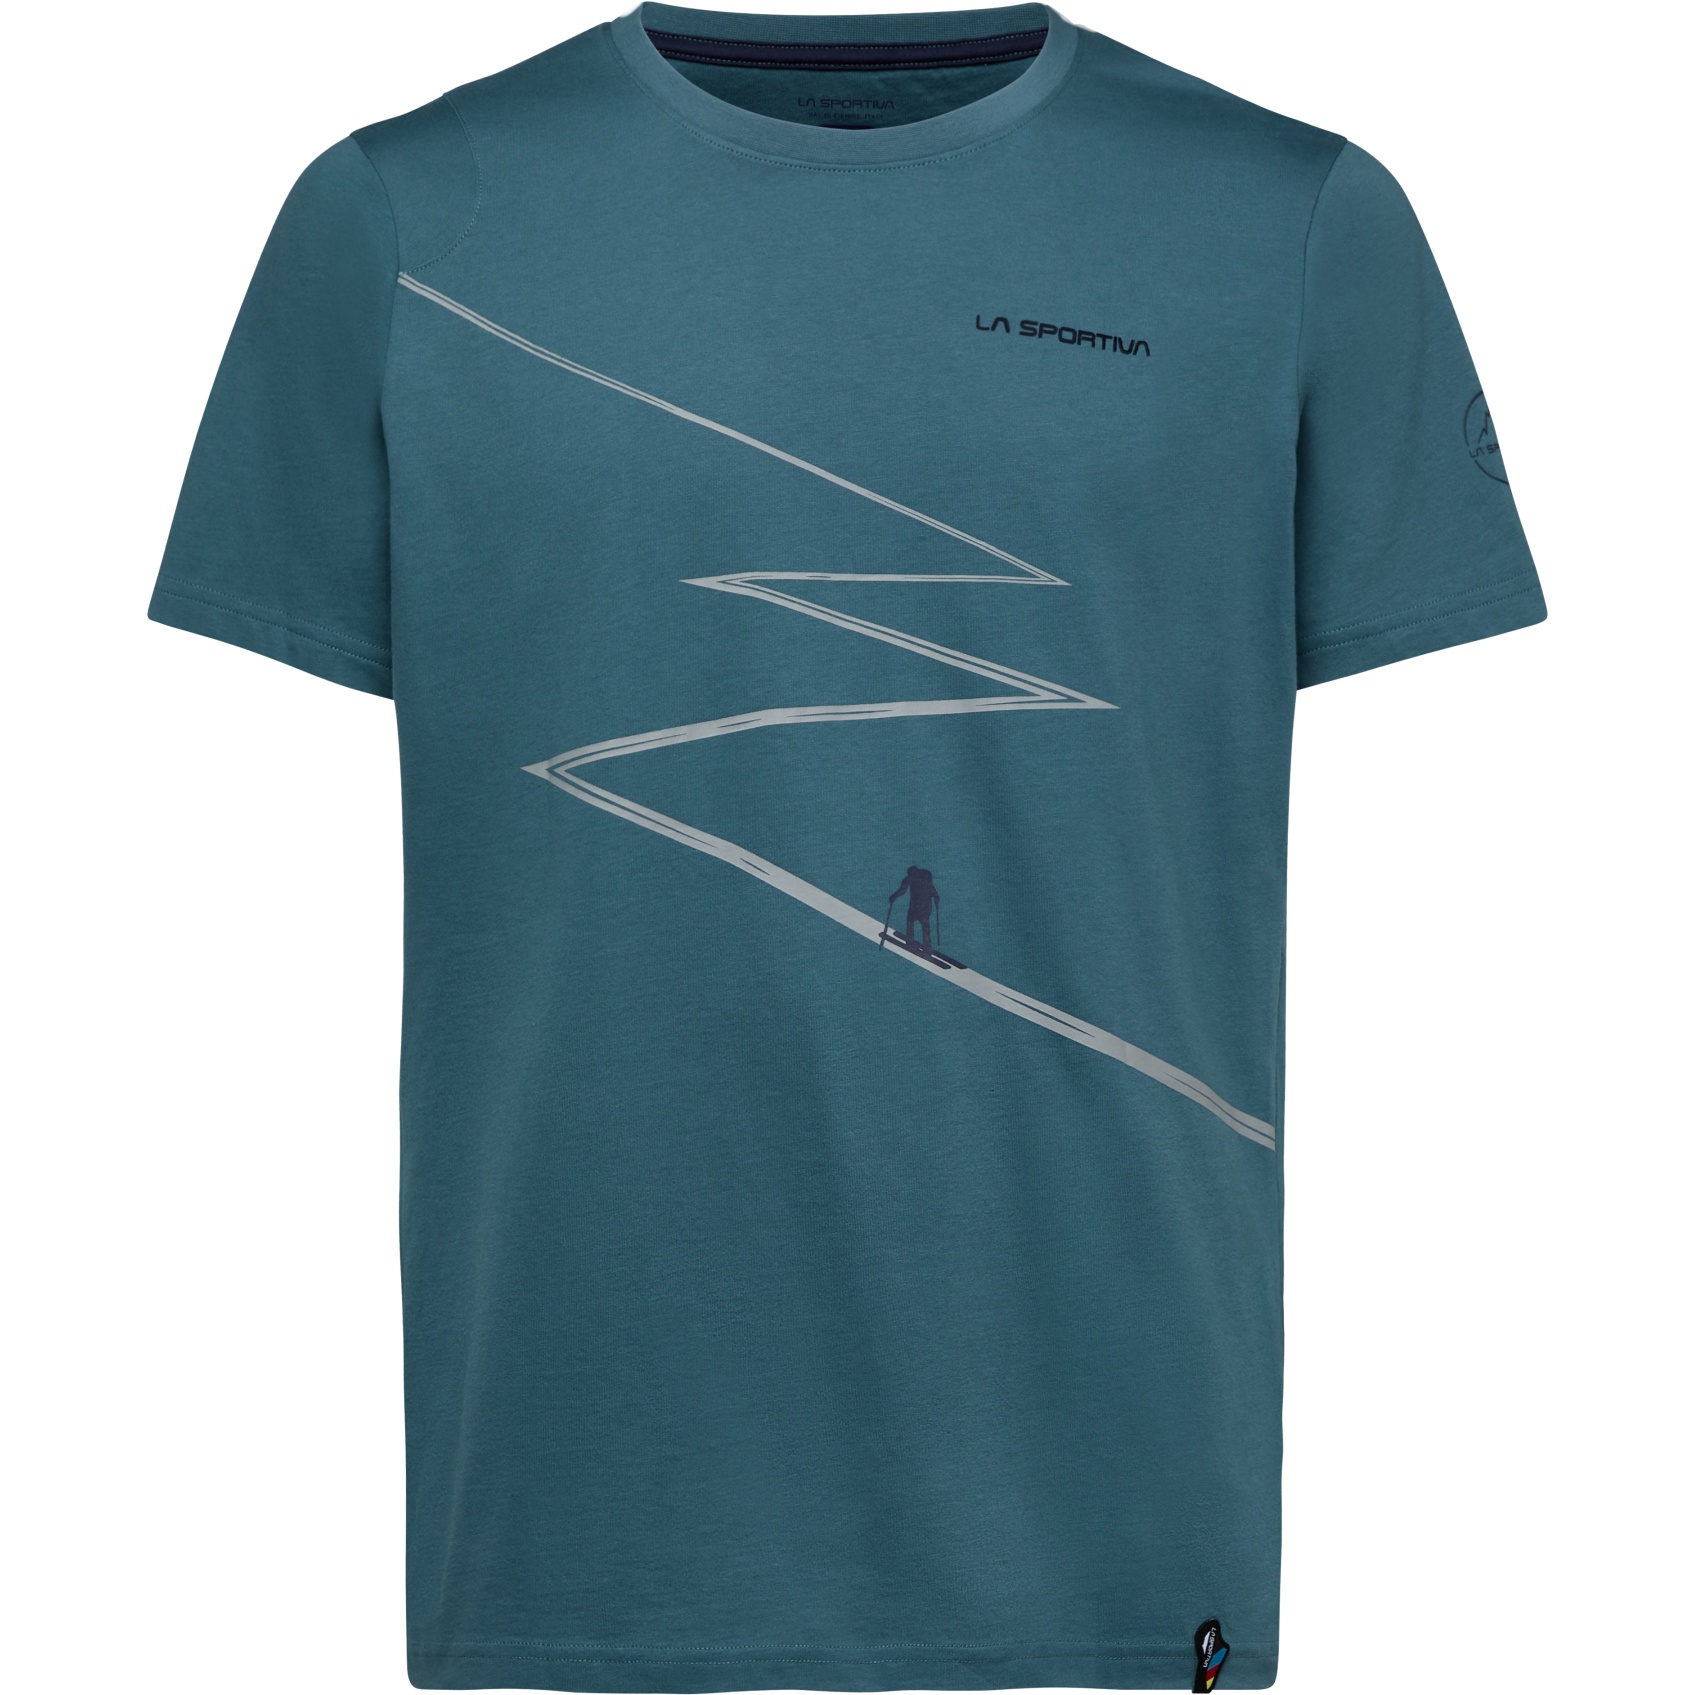 Produktbild von La Sportiva Track T-Shirt Herren - Hurricane